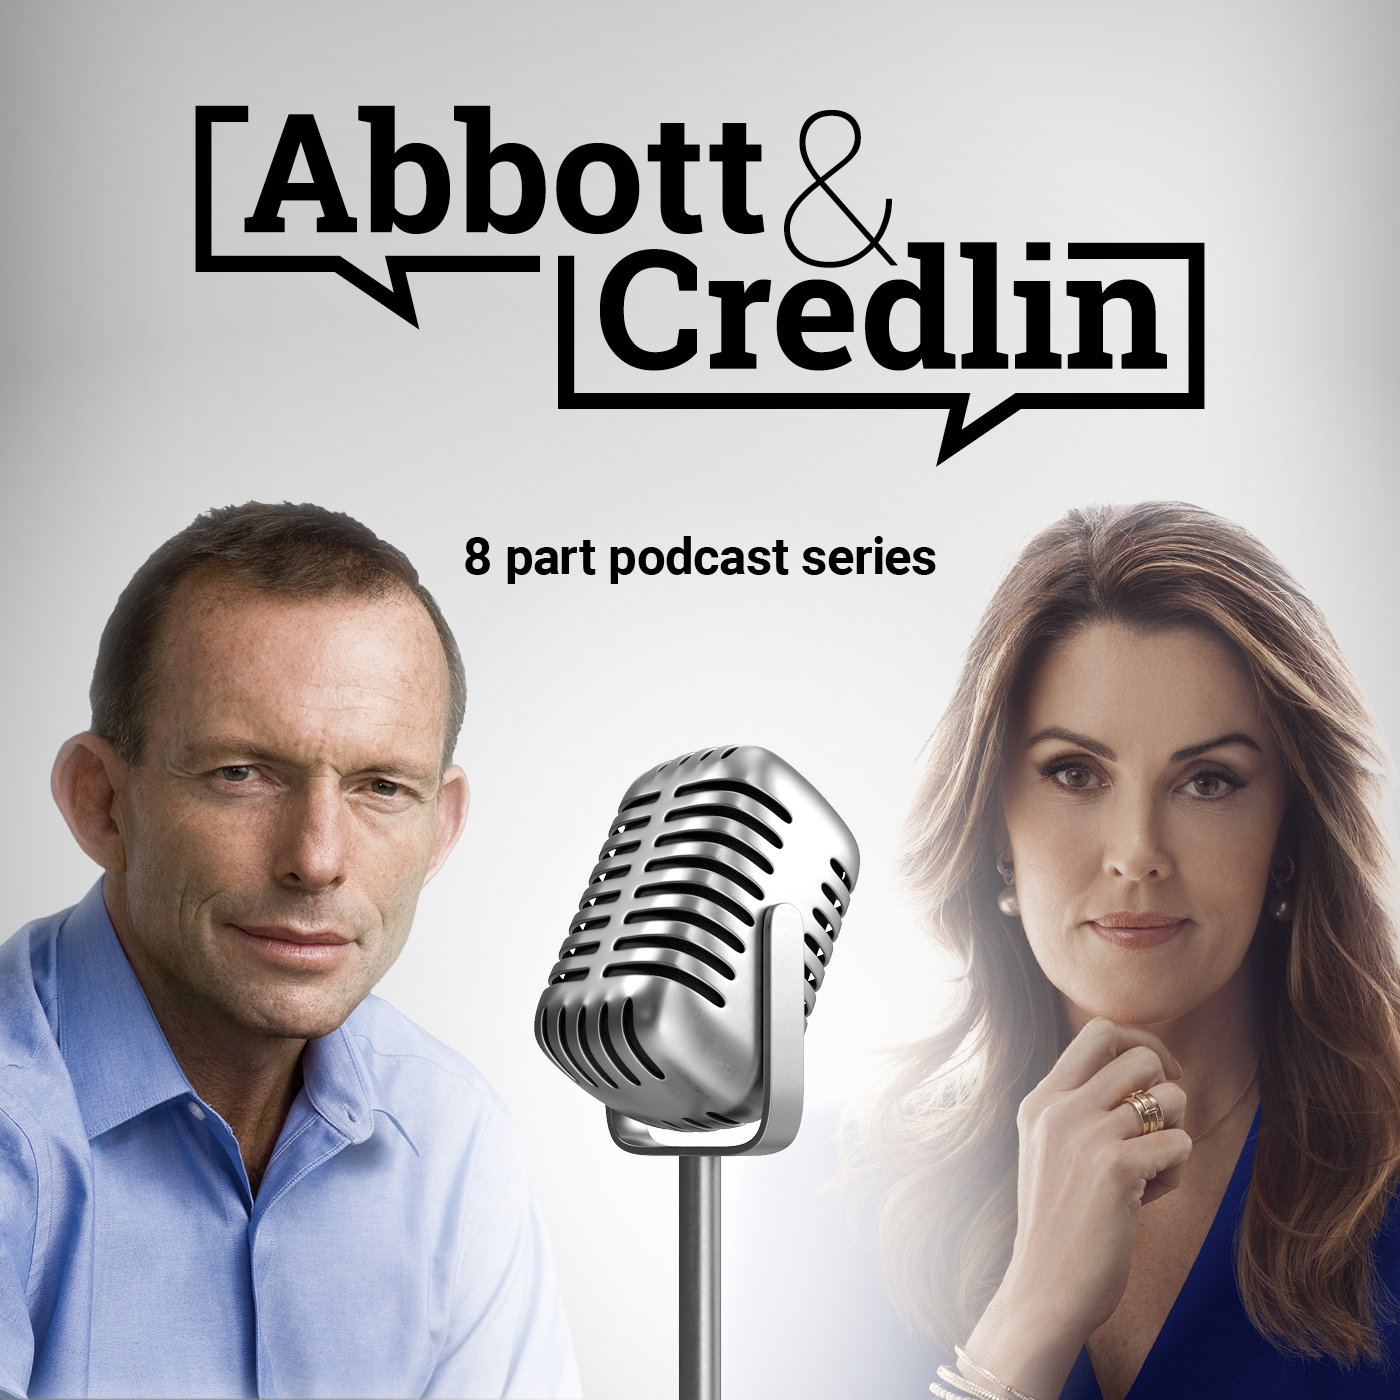 Abbott & Credlin | Episode 5